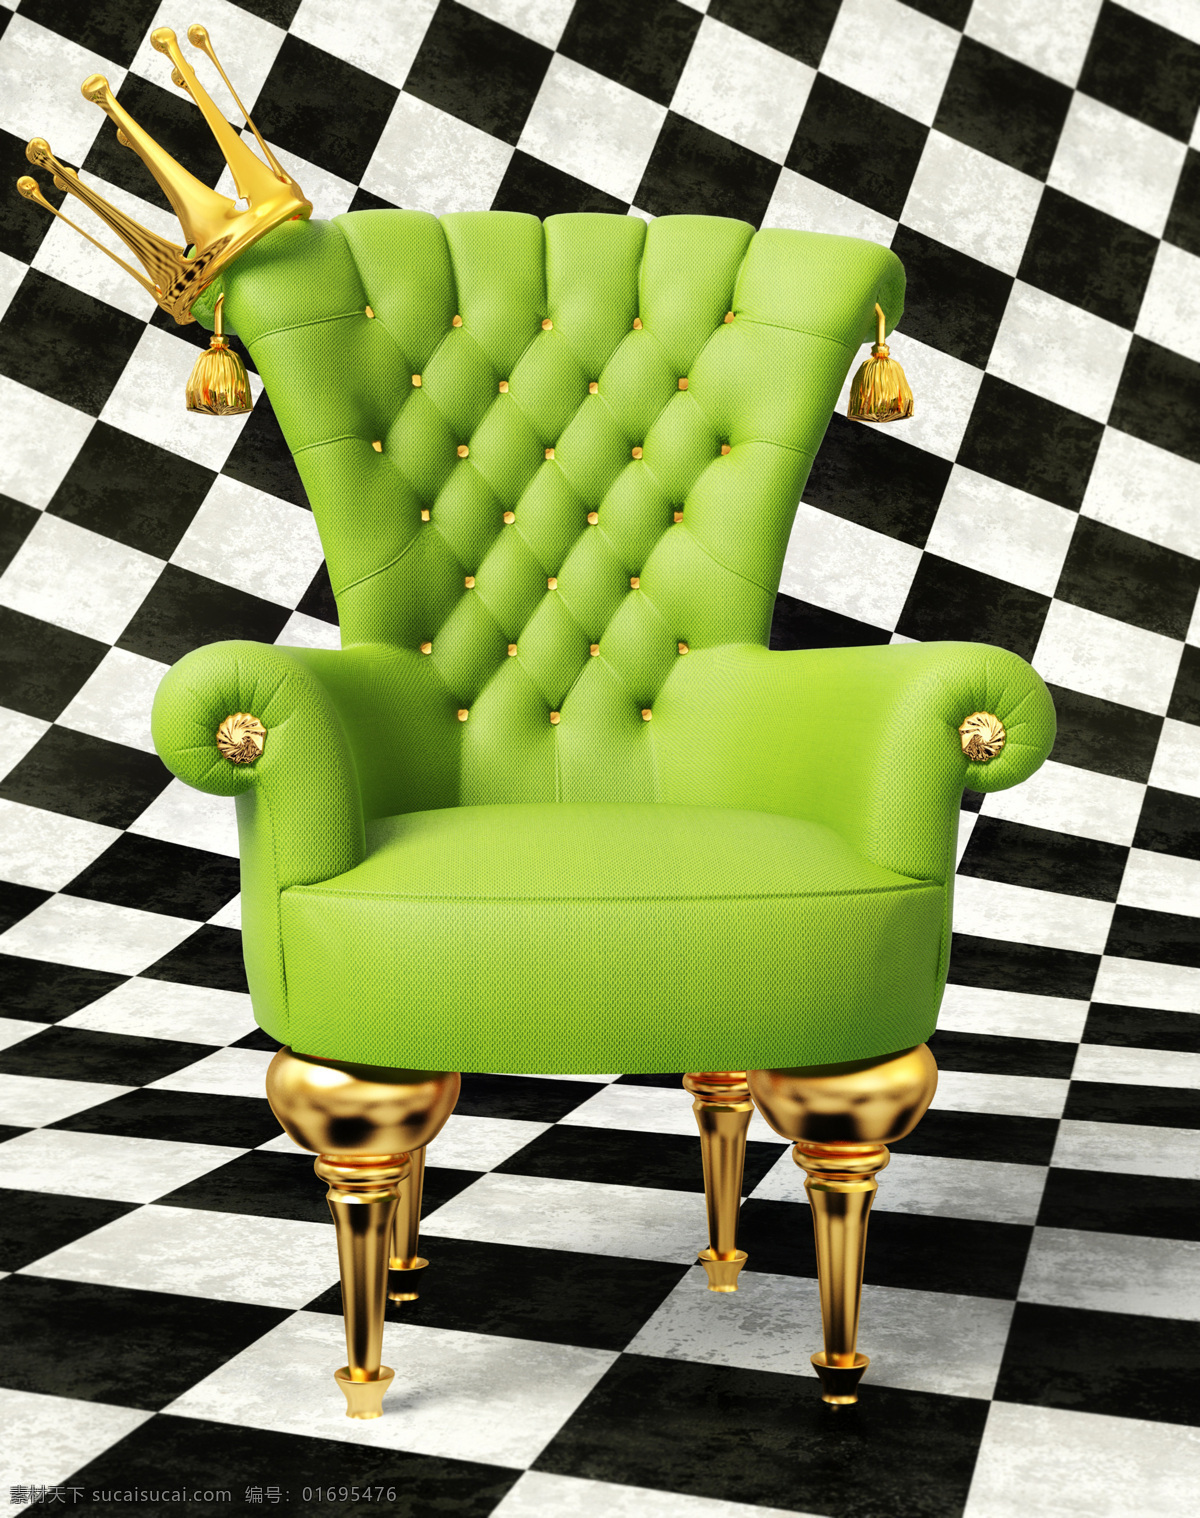 绿色 皇冠 欧式 椅子 欧式椅子 绿色椅子 高清图片 jpg图库 摄影图片 高档椅子 黑白地砖 家具电器 生活百科 黑色